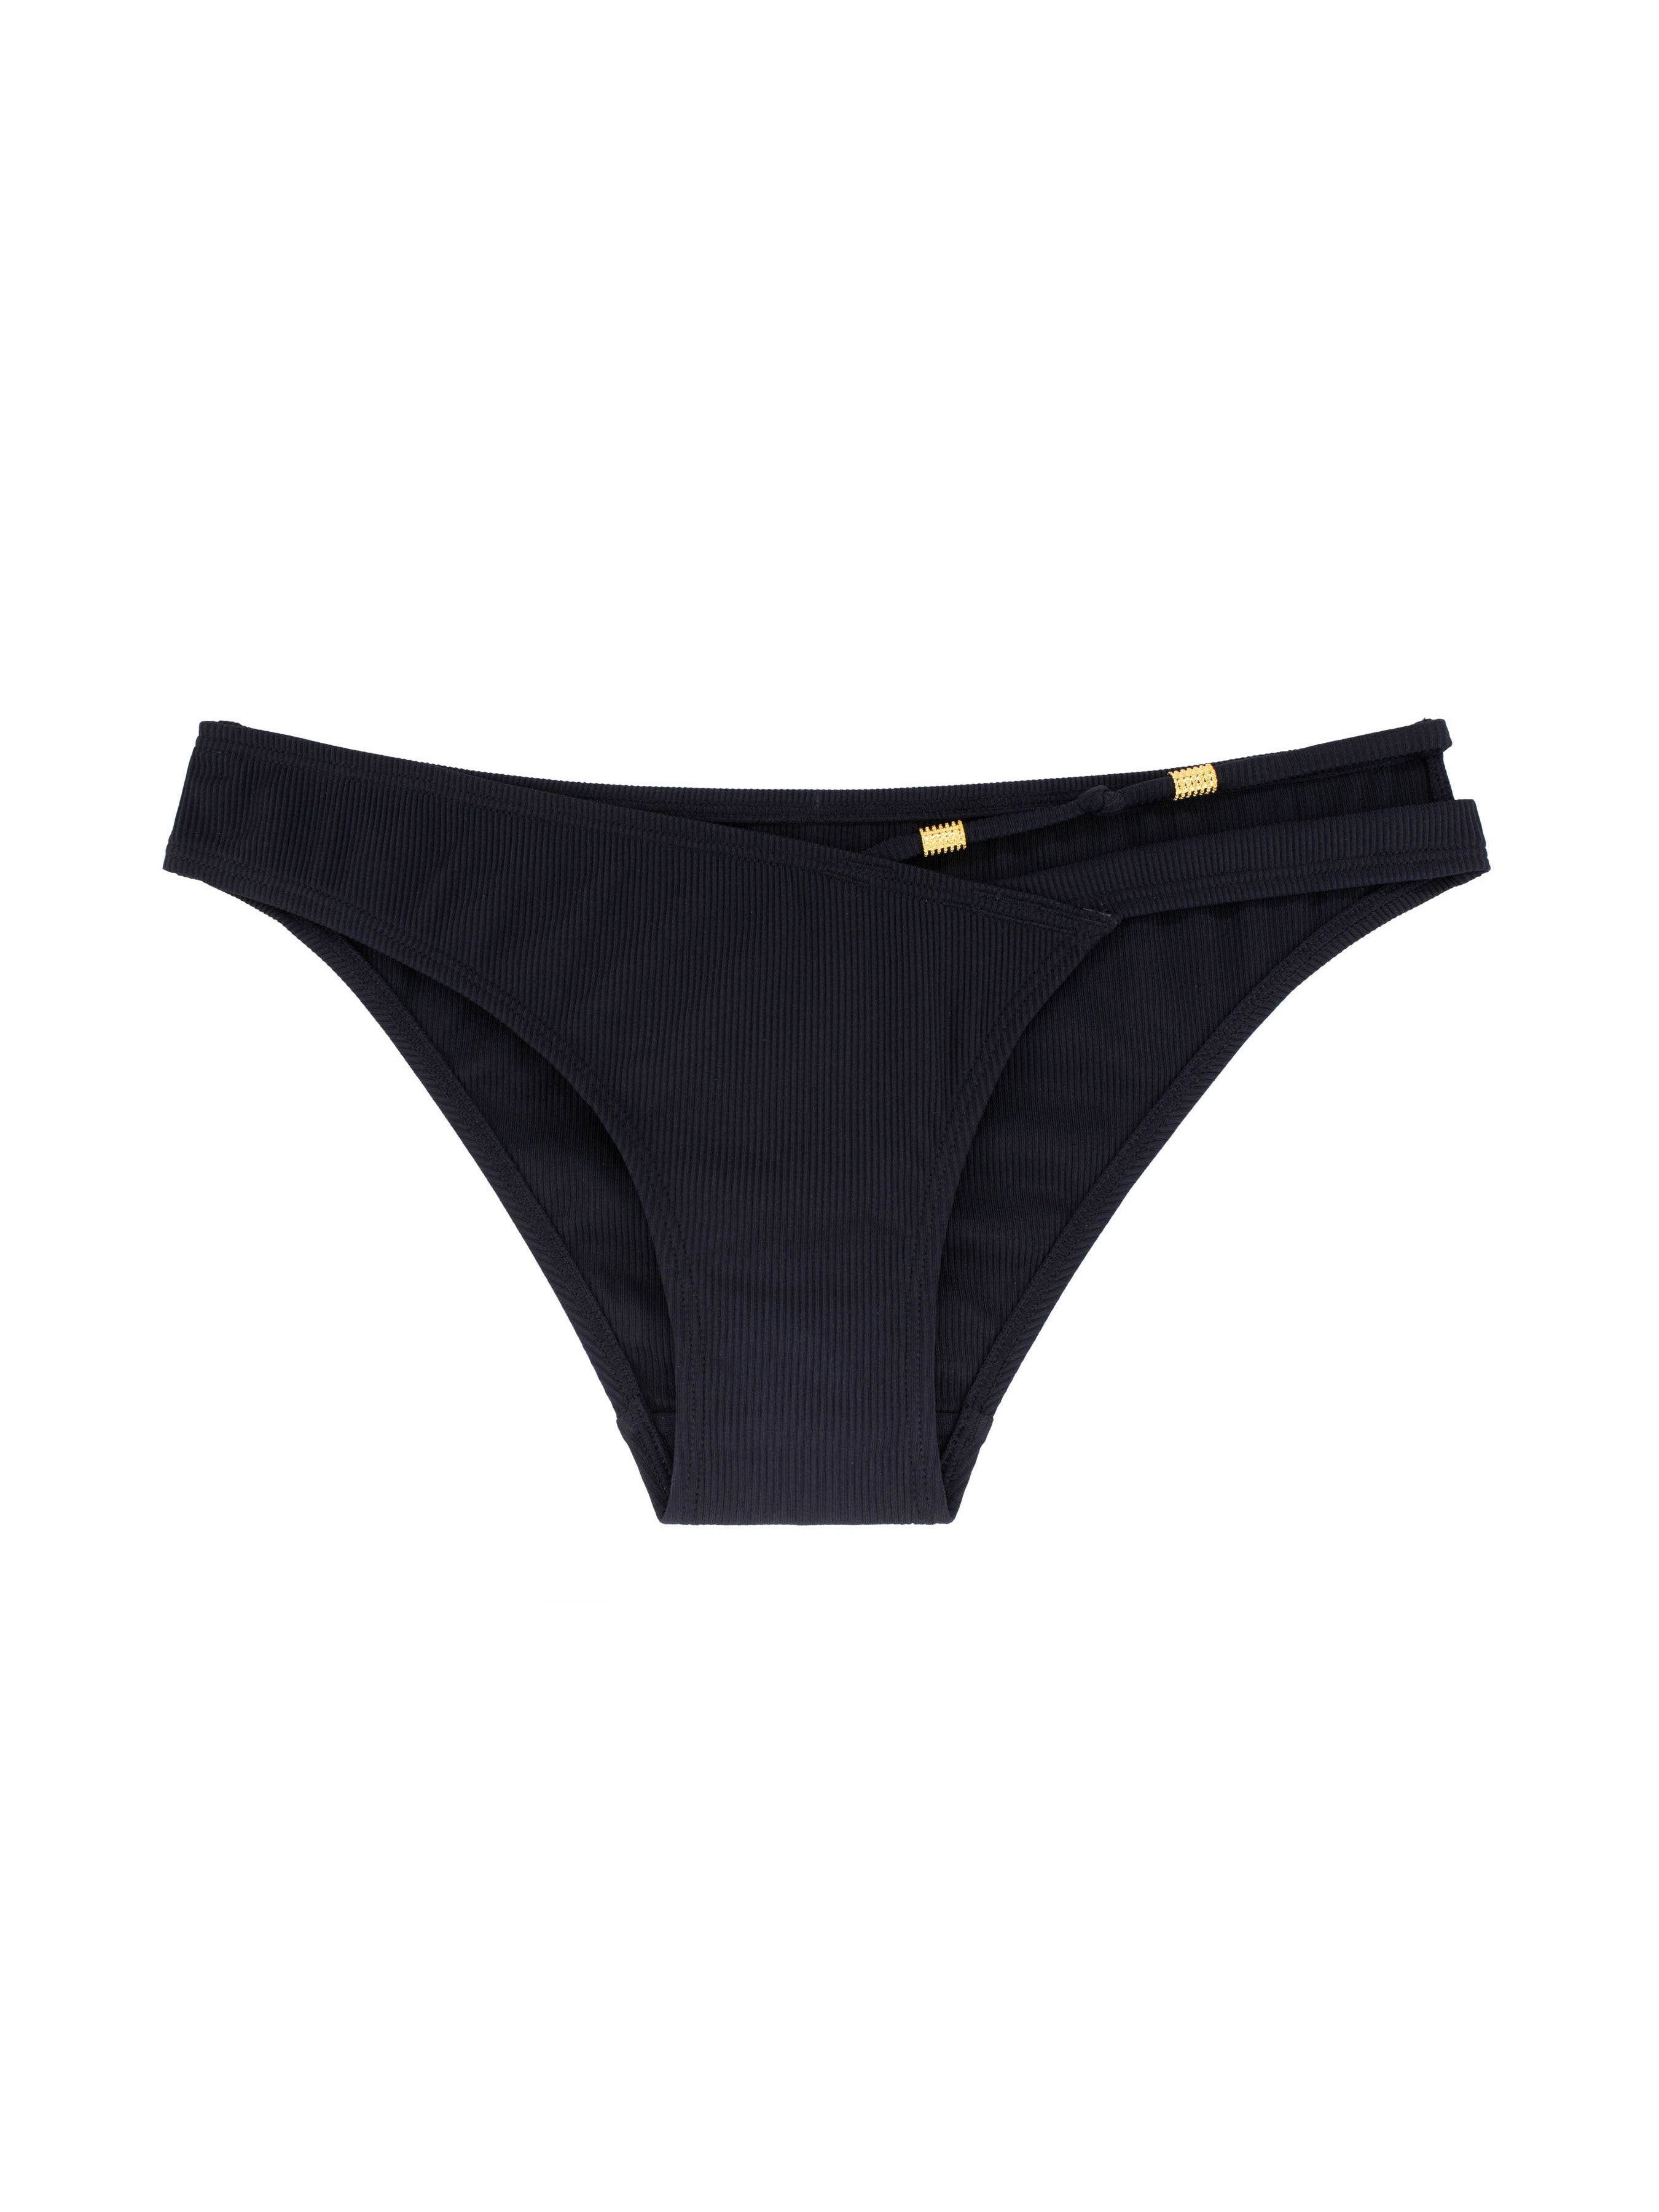 DORINA IBADAN Brazilian Women's Swimwear Briefs Black D001774MI010-BK0001